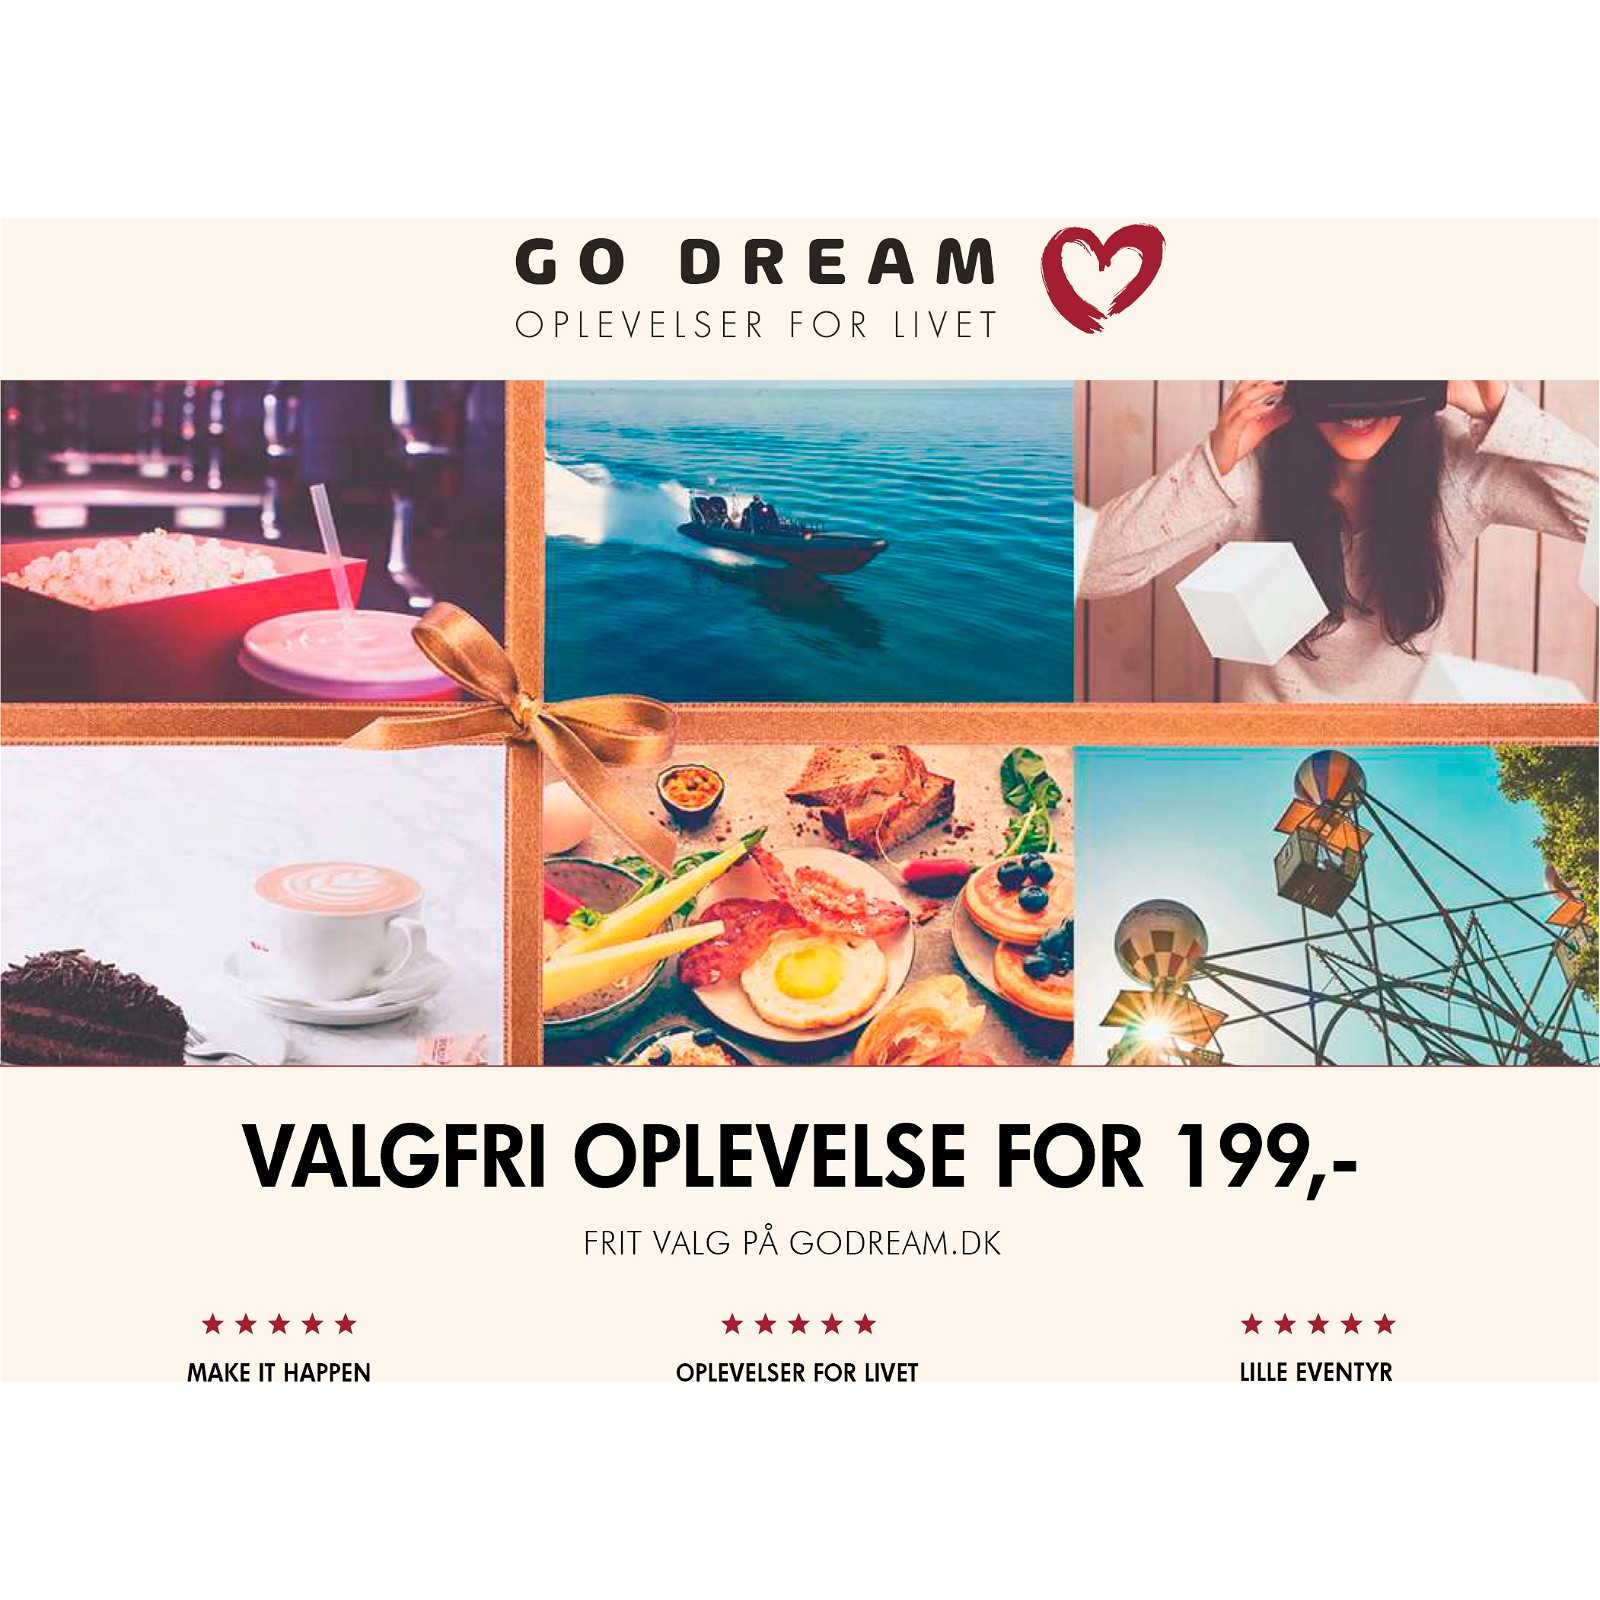 Go Dream Valgfri oplevelse for 199,- gavekort